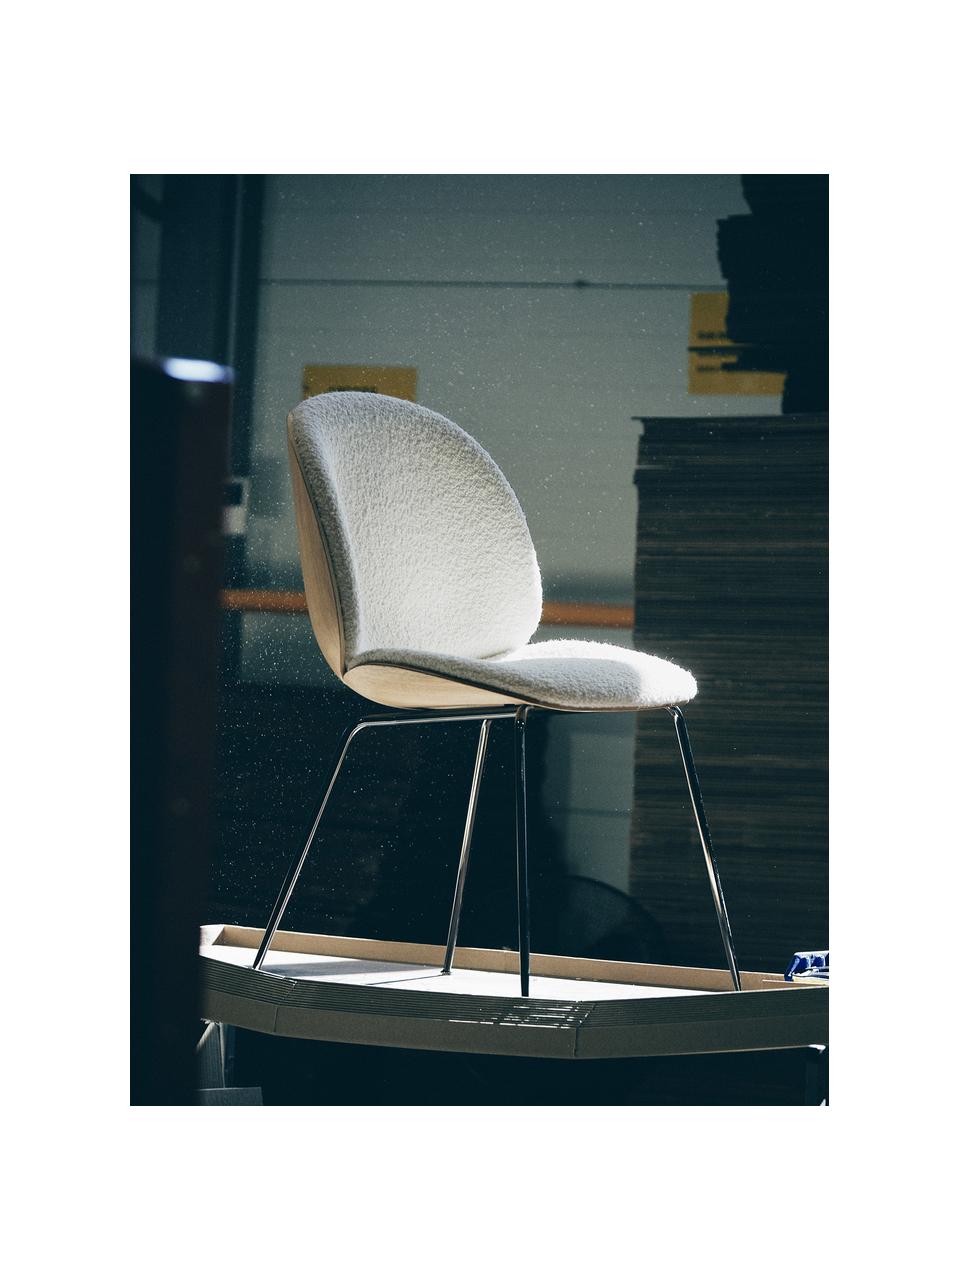 Buklé čalúnená stolička Beetle, Buklé biela, dubové drevo, čierna lesklá, Š 56 x V 58 cm